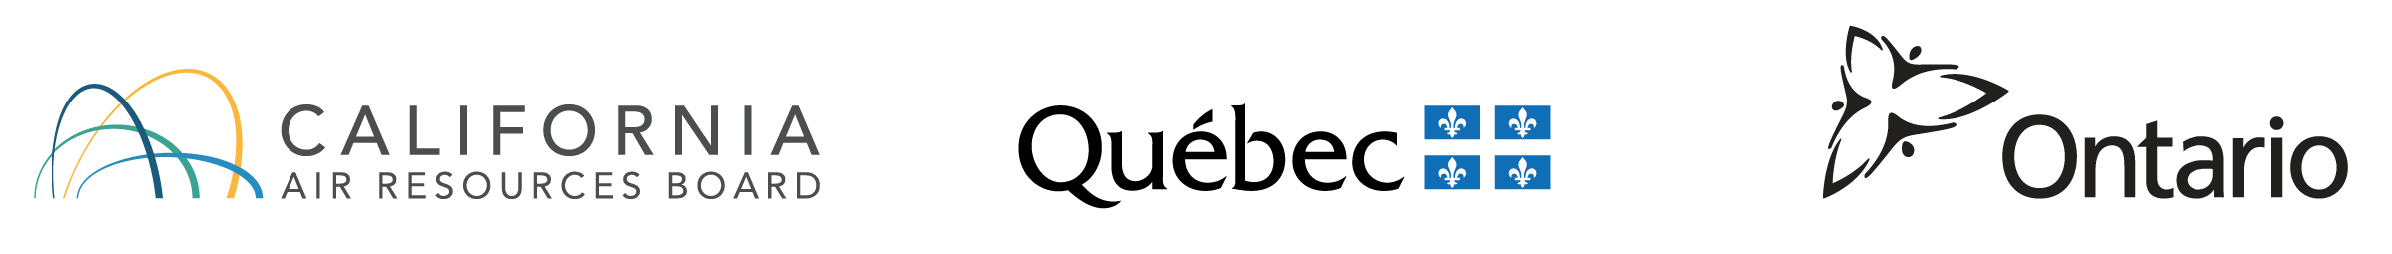 CARB - Quebec - Ontario logos